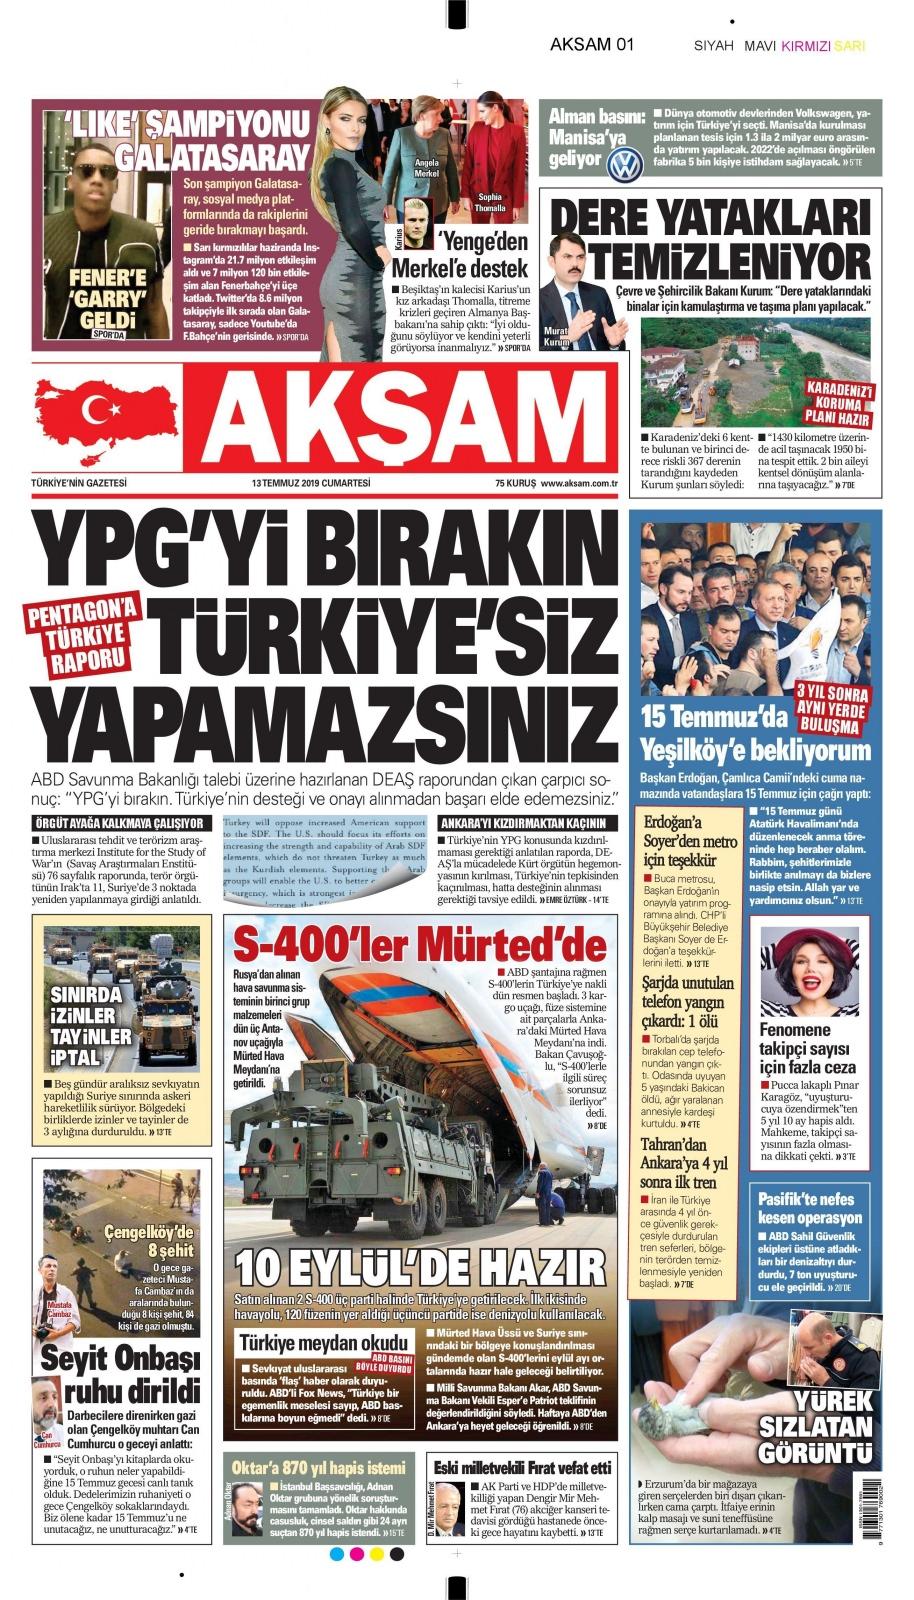 <p>Türkiye'nin S-400 teslimatı sonrası yerel gazeteler yayına hangi manşetle çıktı? İşte gazetelerin S-400 manşetleri...</p>
